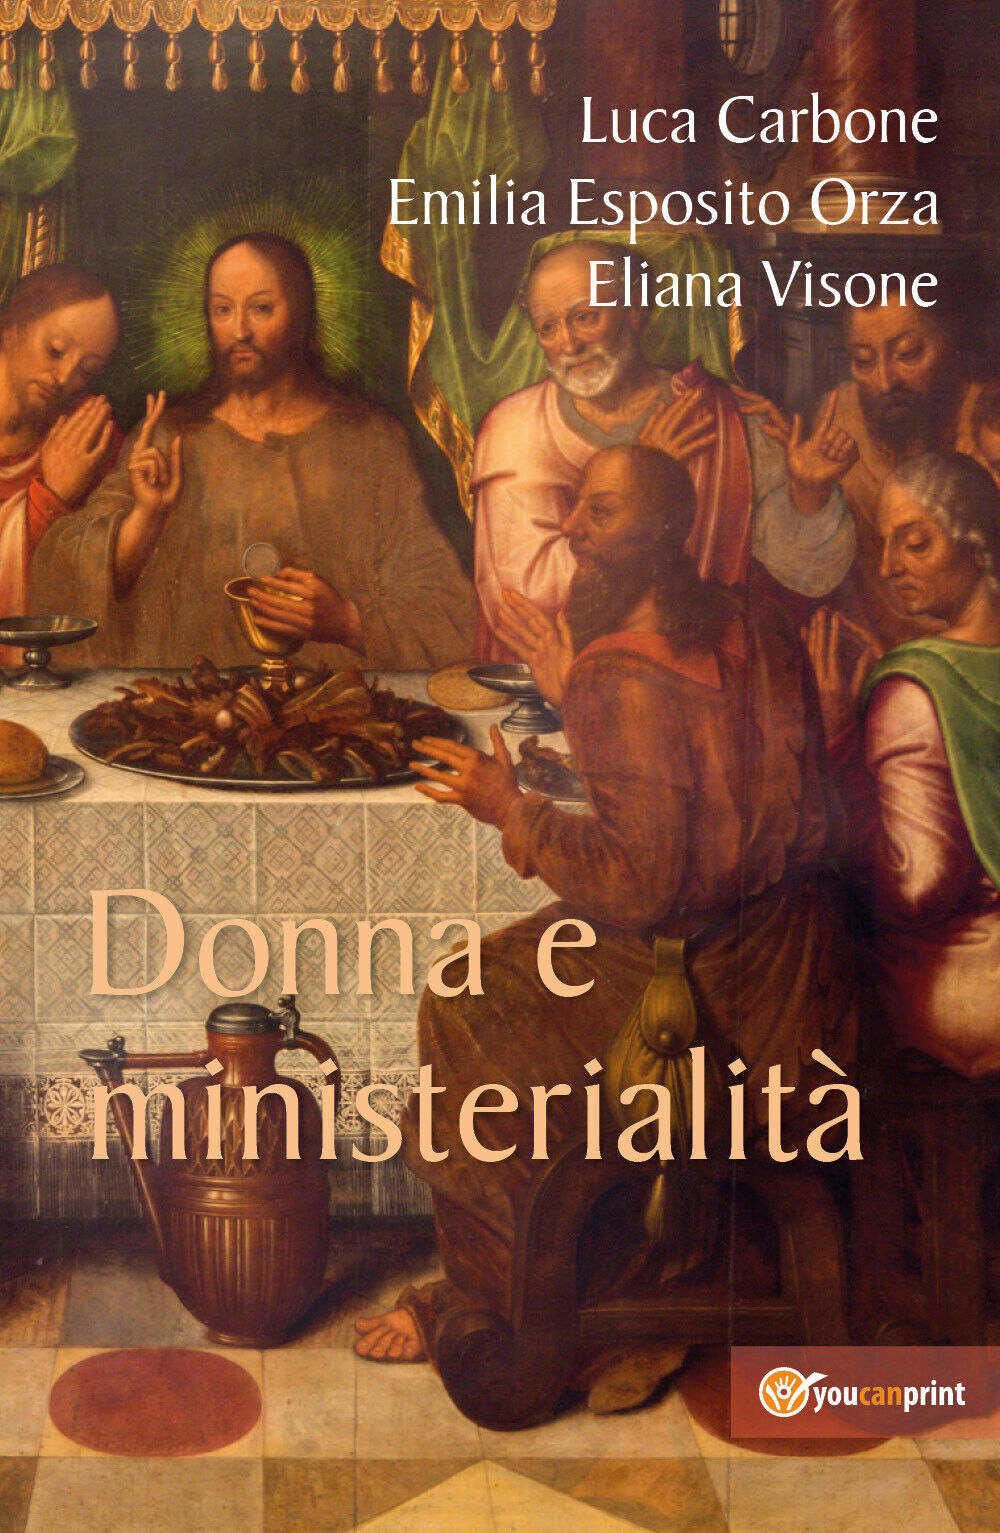 Donna e ministerialit?,i Luca Carbone, Emilia Esposito Orza, Eliana Visone